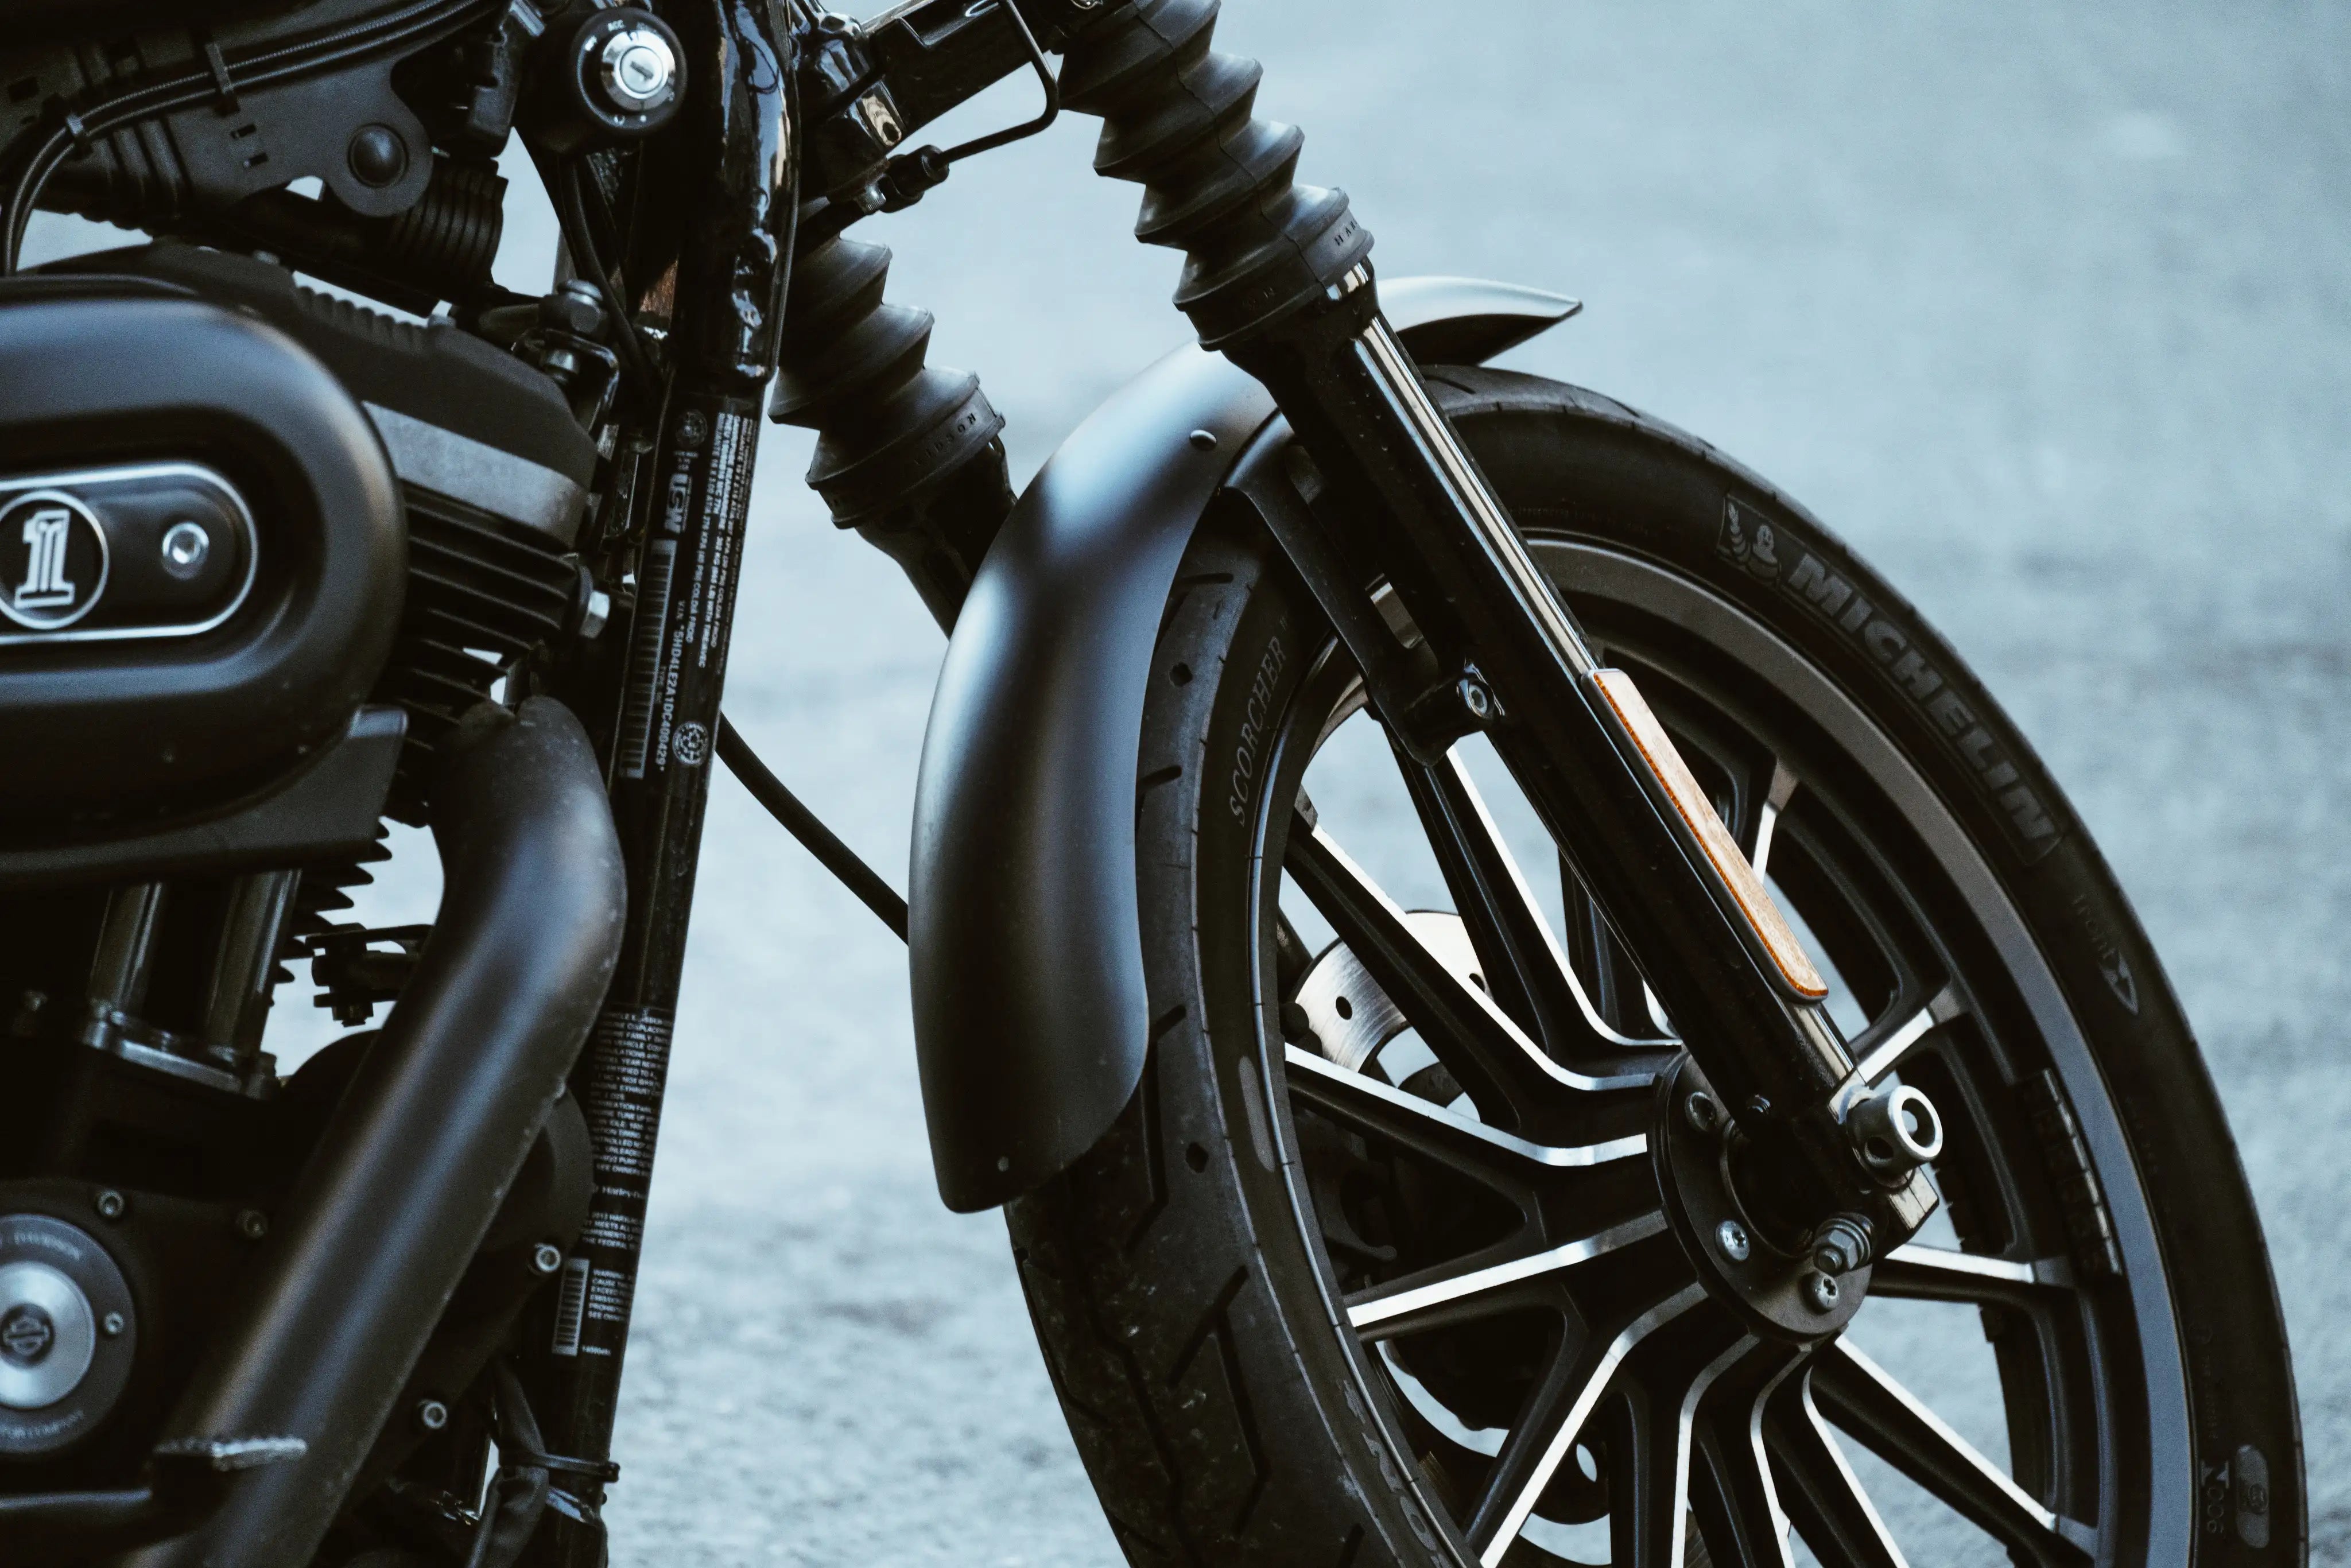 Ein schwarzes Motorrad steht im freien auf einem Reifenschoner.